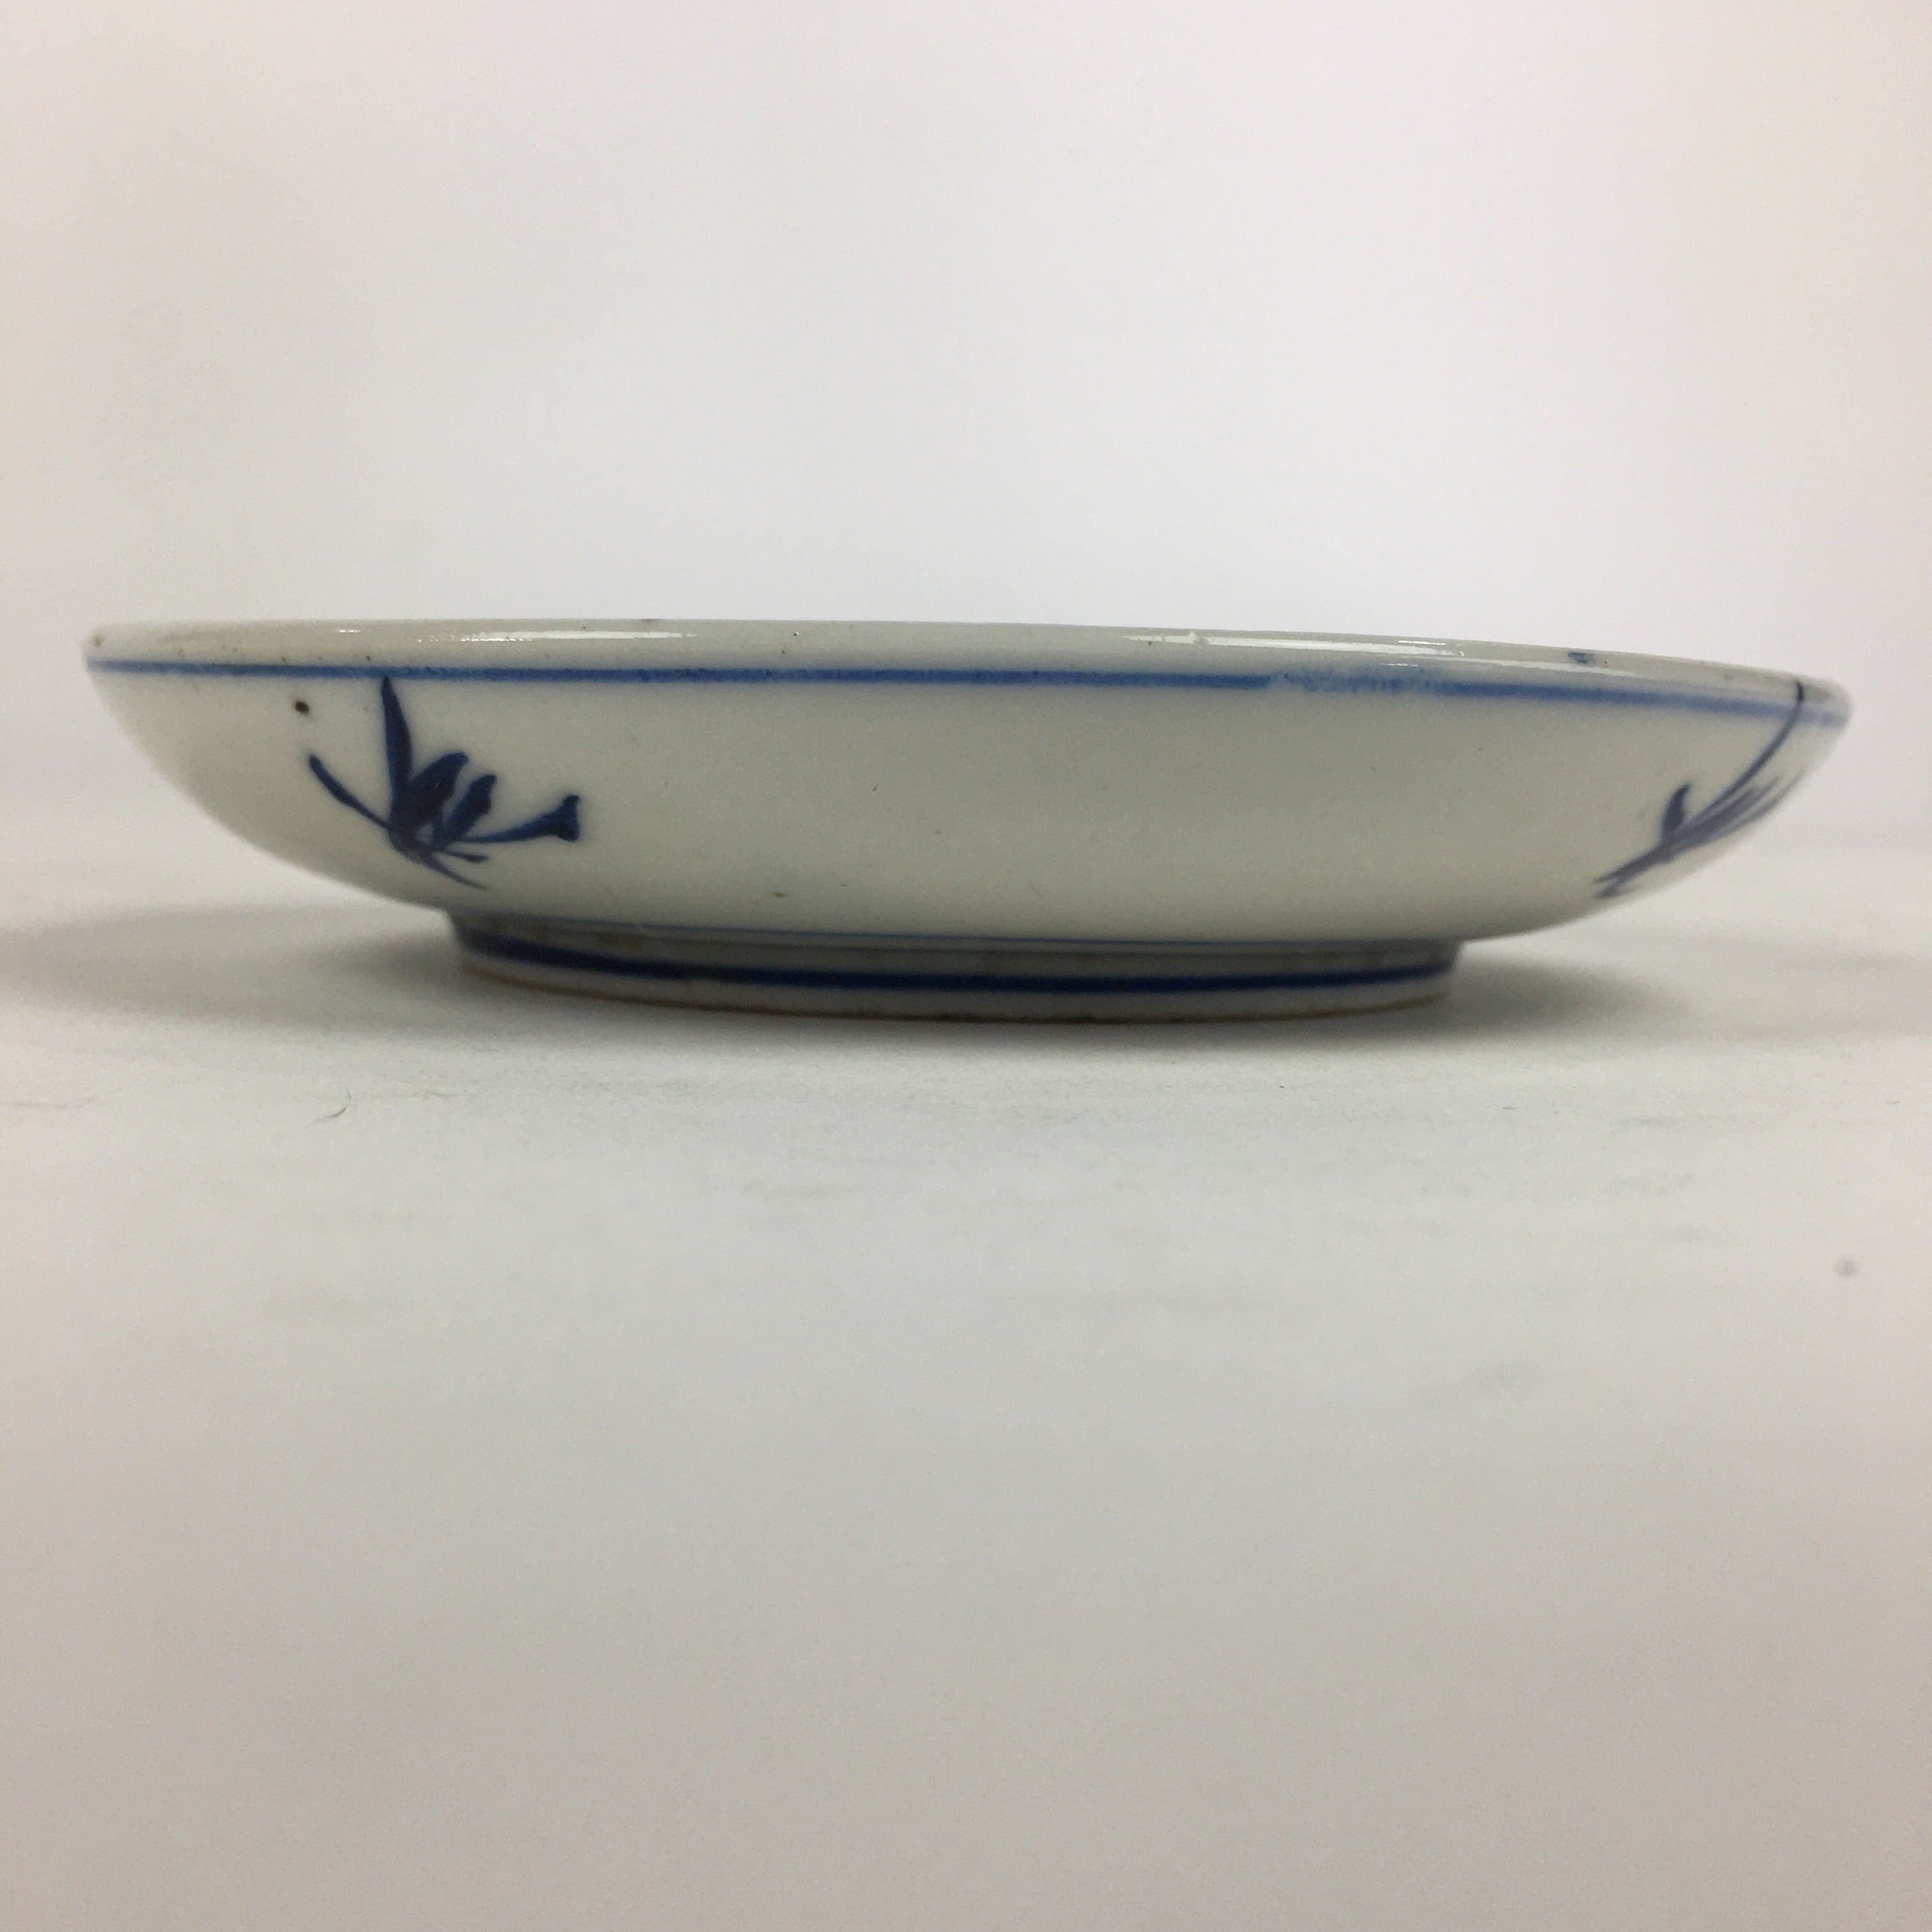 Japanese Porcelain Small Plate Kozara Vtg Blue Flower Dandelion Kozara PP816